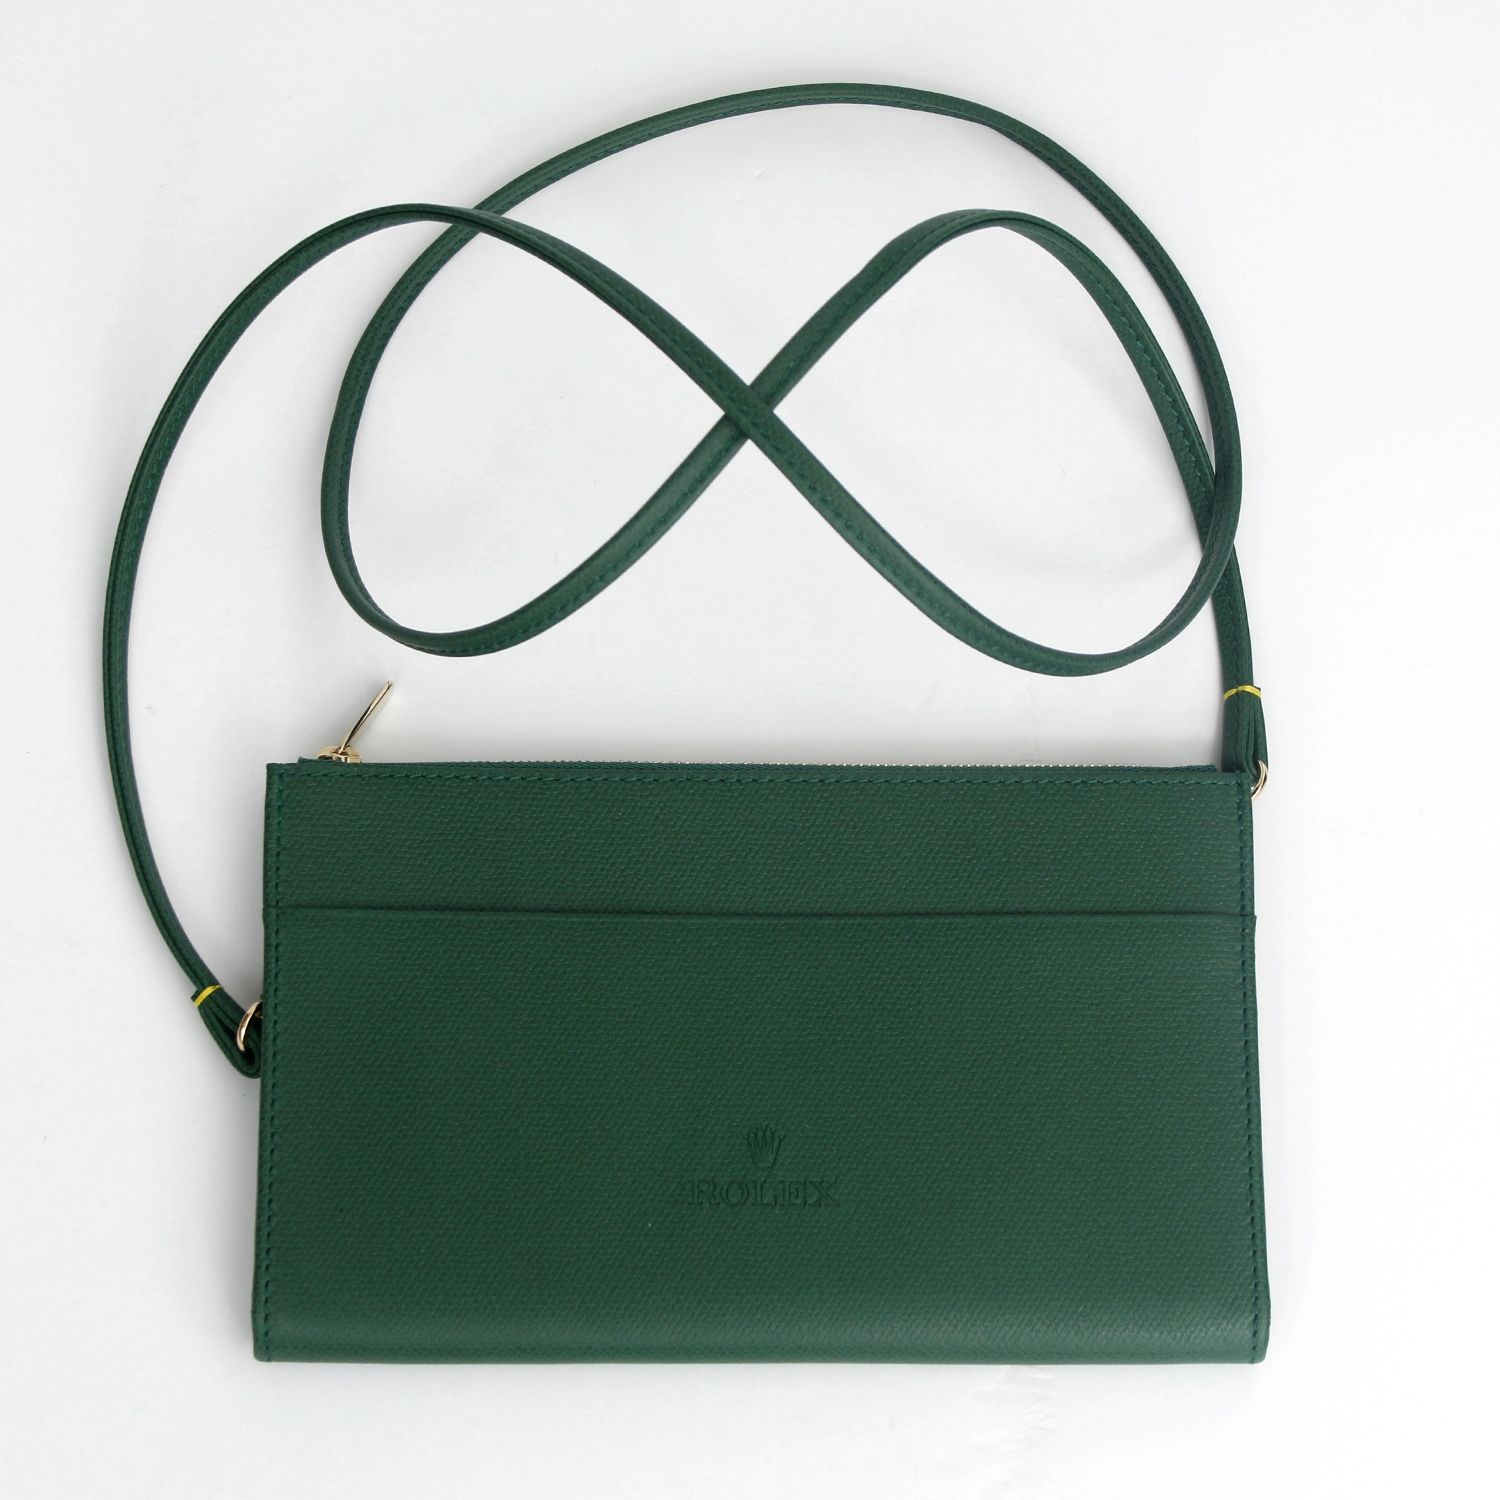 Emma Fox Green Pebbled Leather Bag Shoulder Purse Floral Lining | eBay